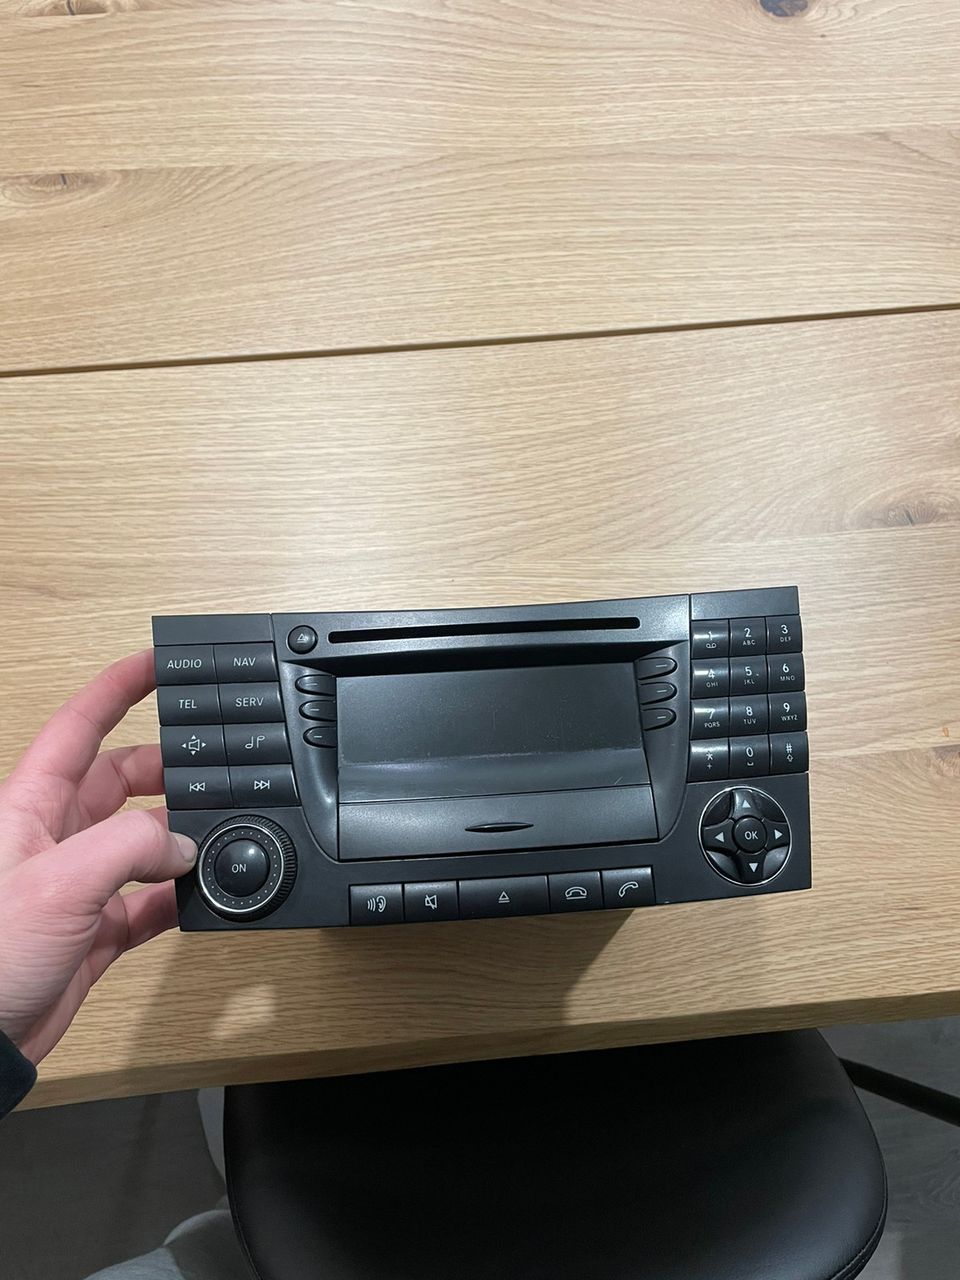 MB W211 radio